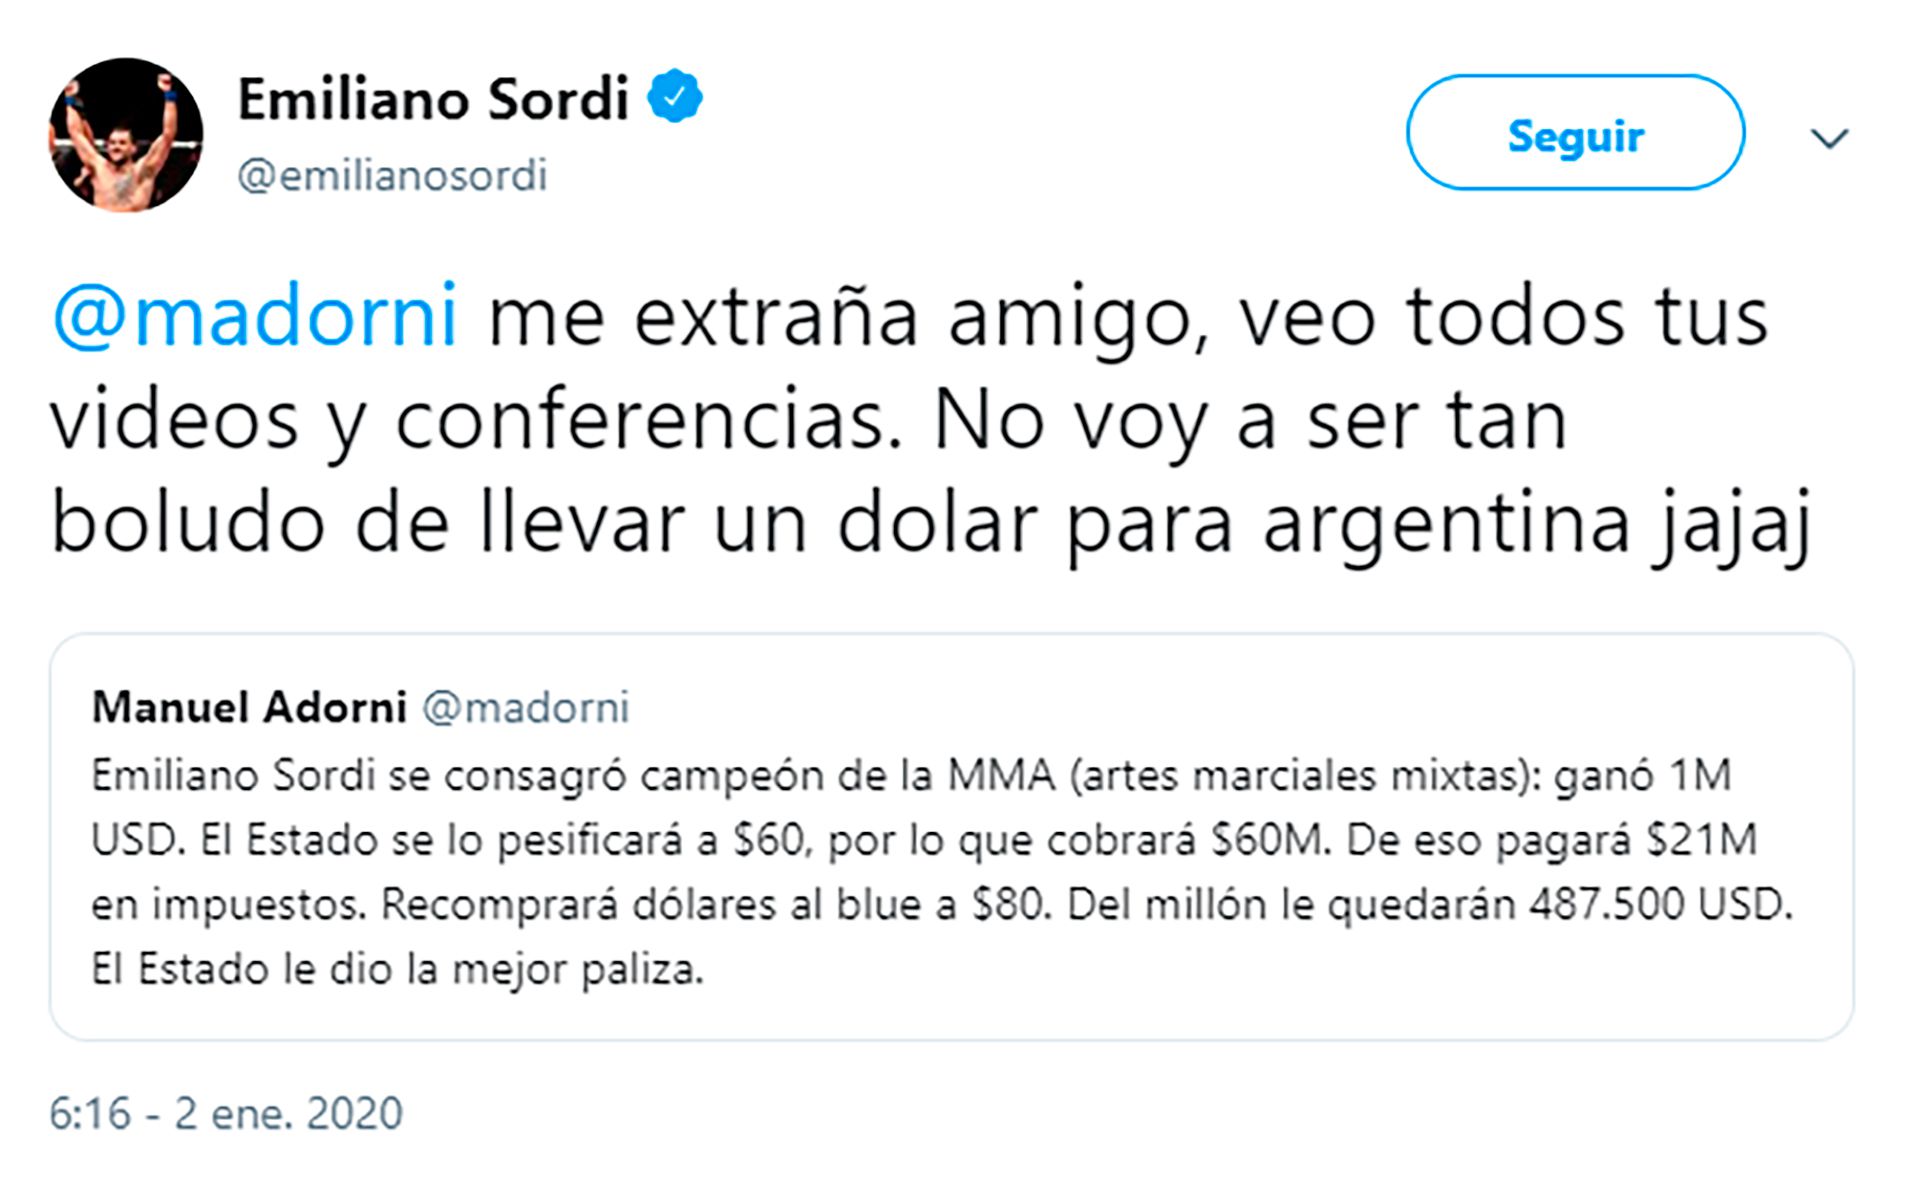 El tuit de Emiliano Sordi